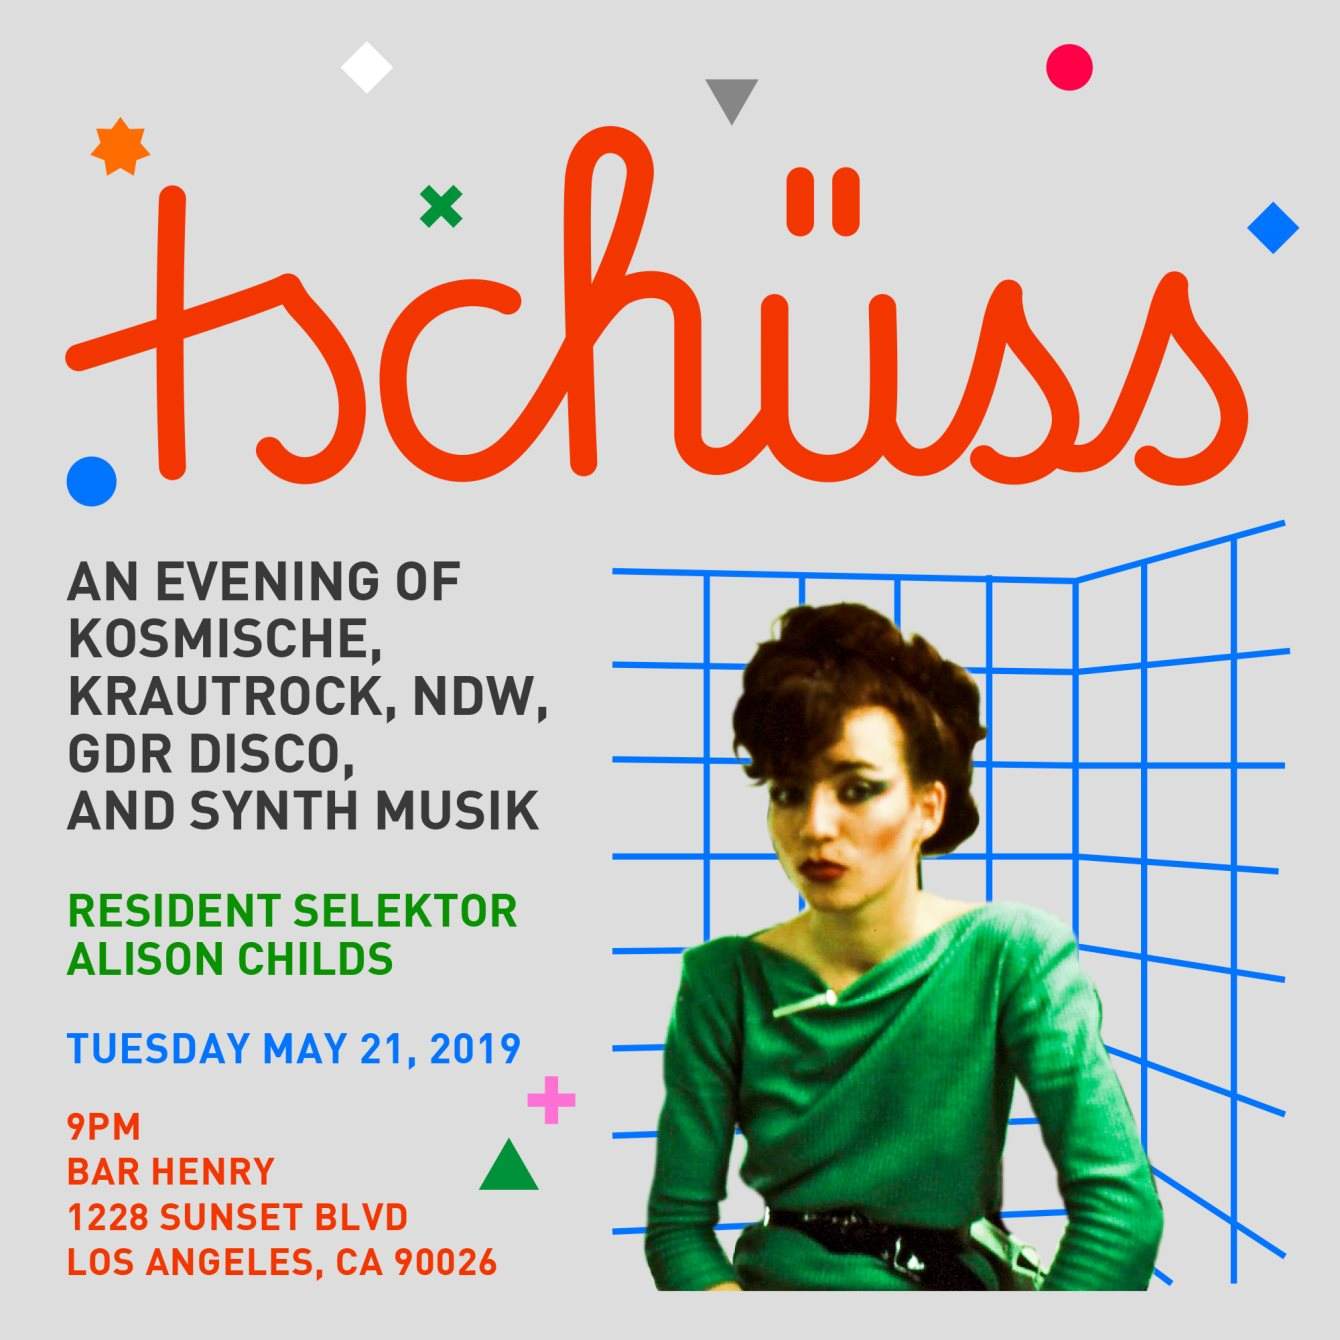 Tschüss! An Evening of Krautrock, Kosmische, NDW, GDR Disco, and Synth Musik - Página trasera